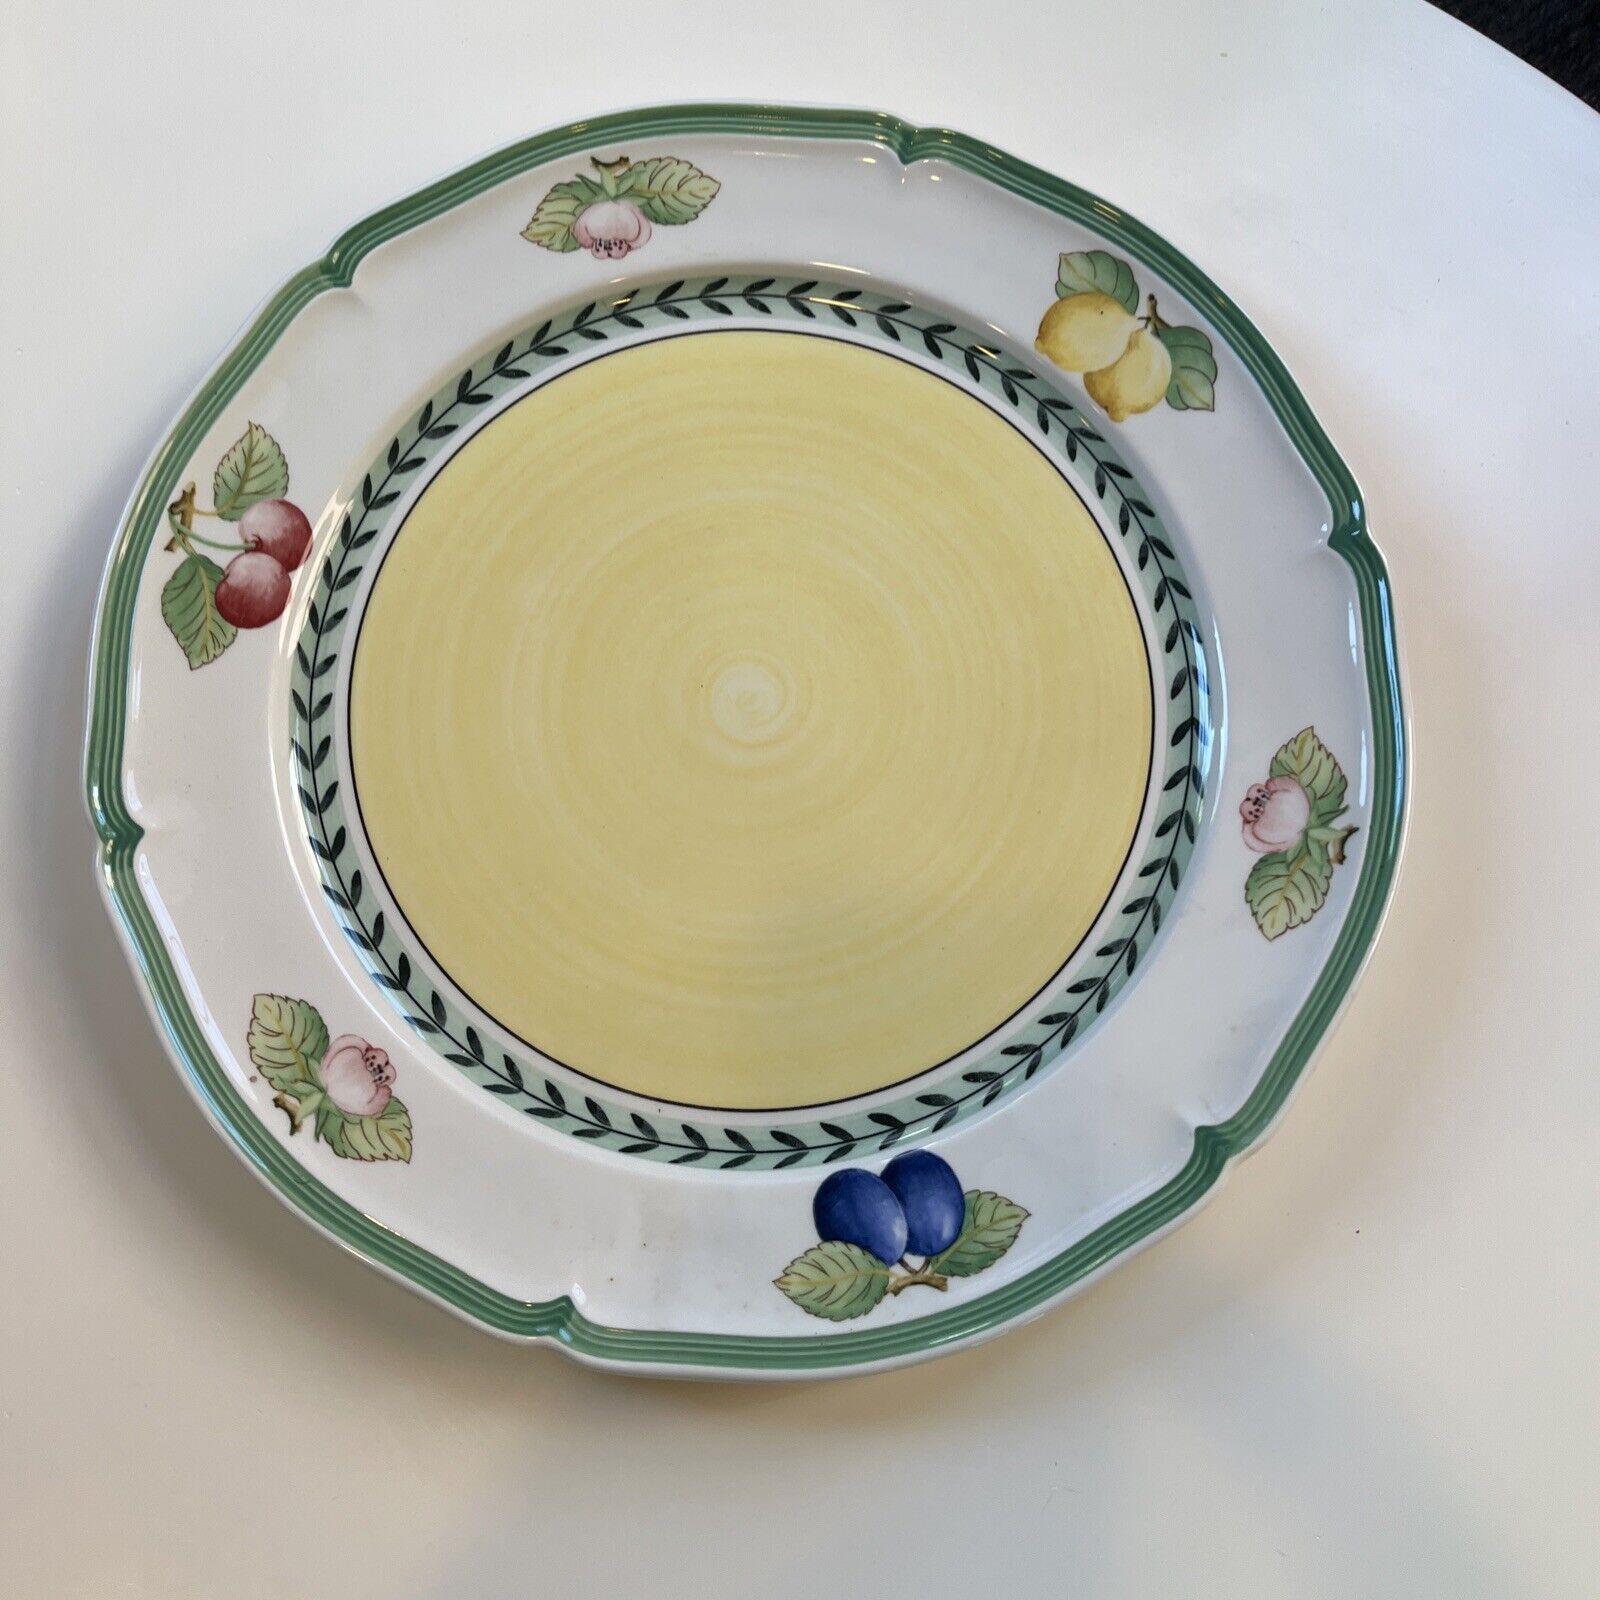 Villeroy & Boch French Garden Fleurence Chop Plate Platter 12.5”